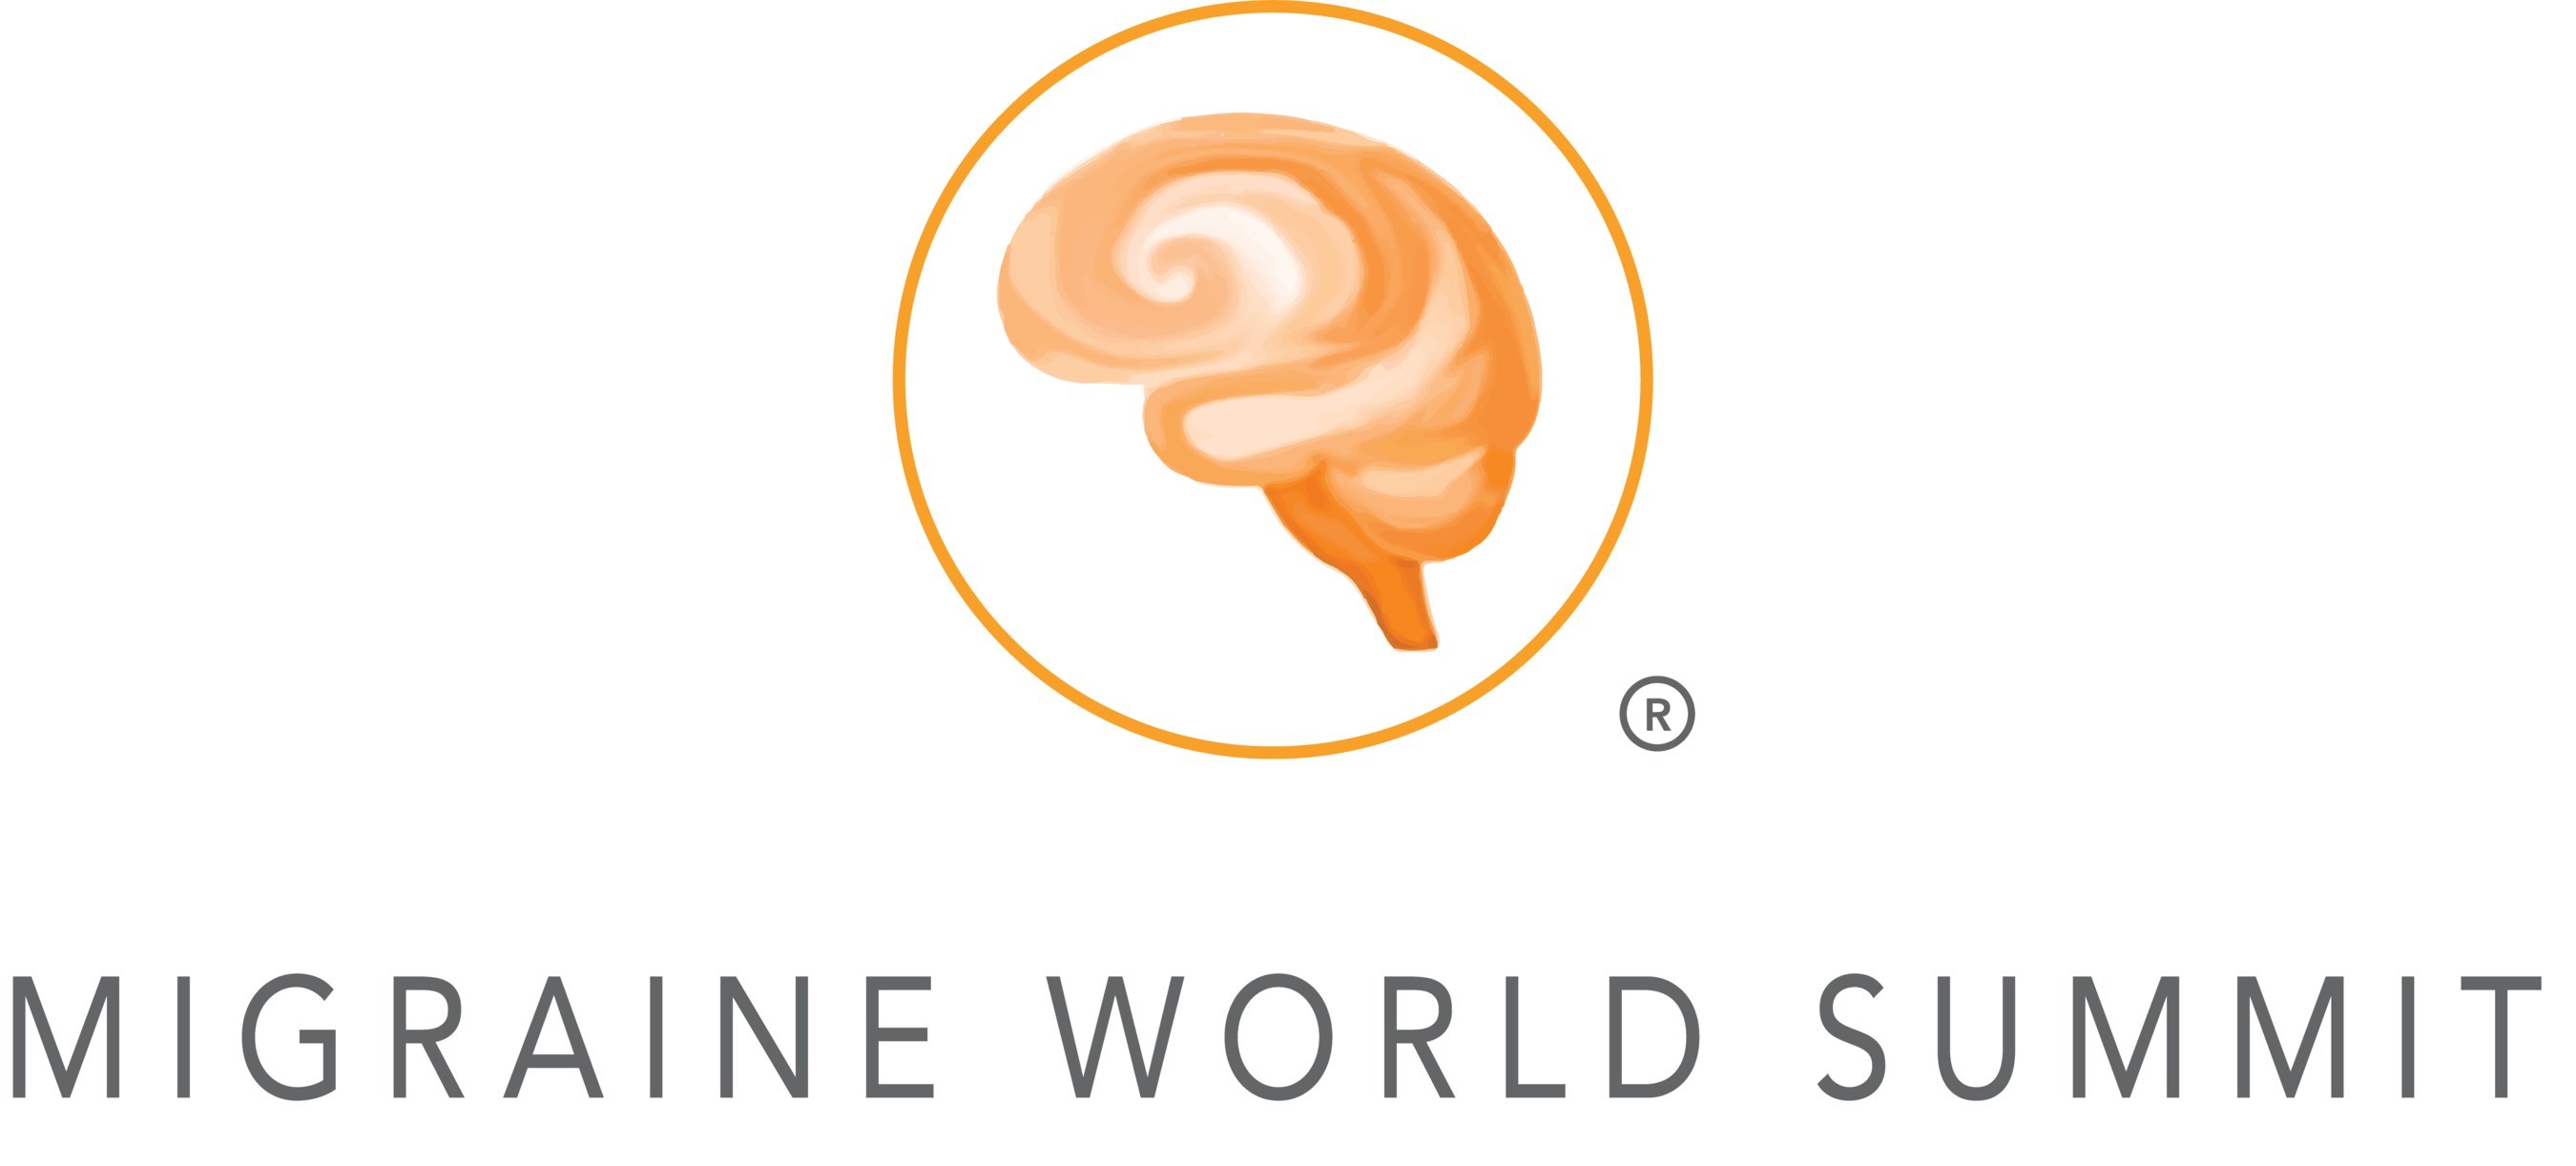 Migraine World Summit Premieres Online March 17th 25th, 2021